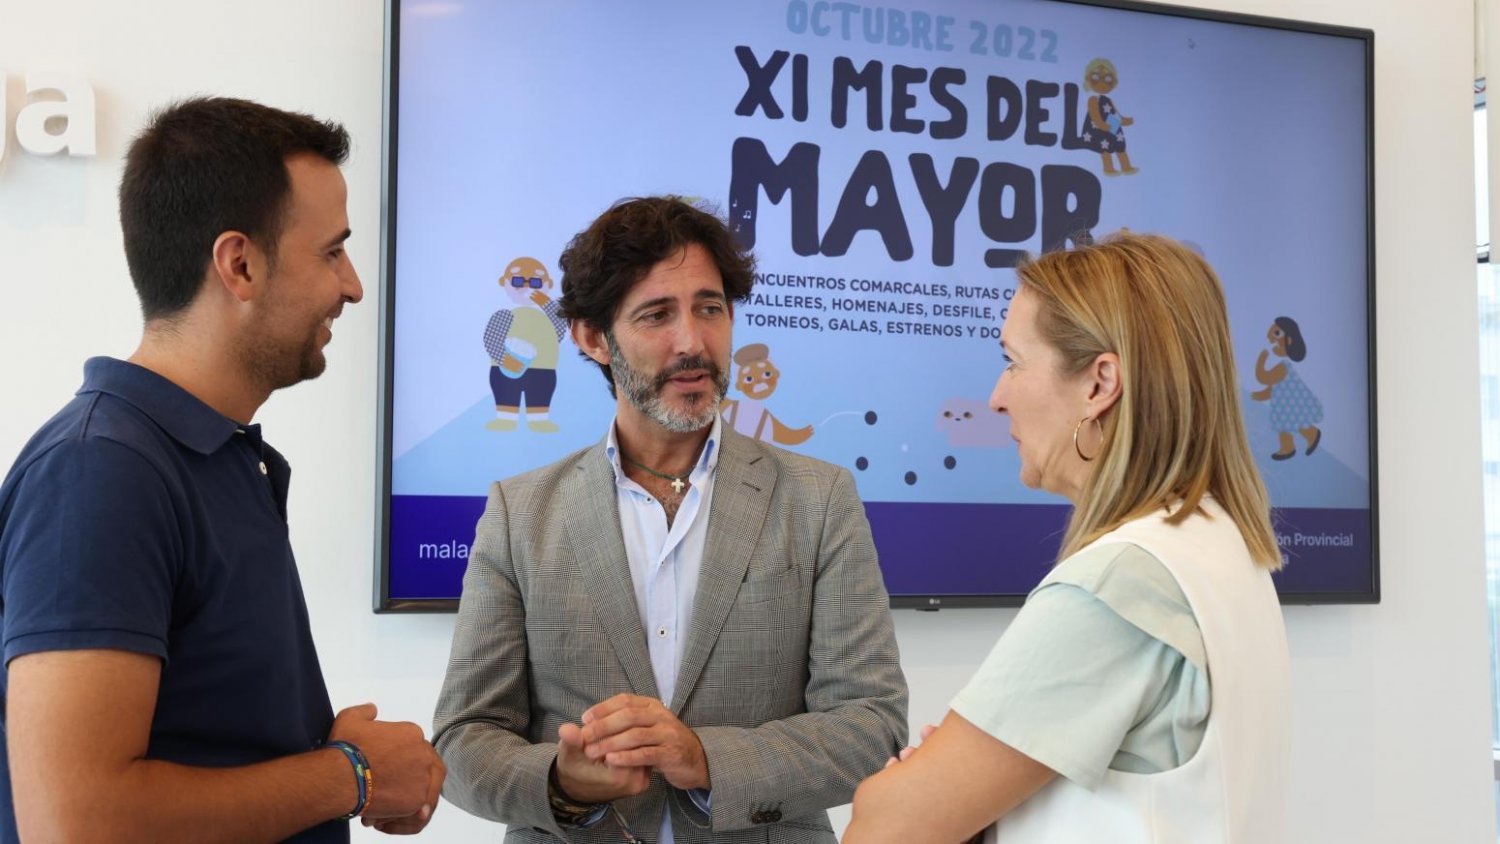 Diputación programa talleres, encuentros comarcales, excursiones y rutas culturales con motivo del XI Mes del Mayor